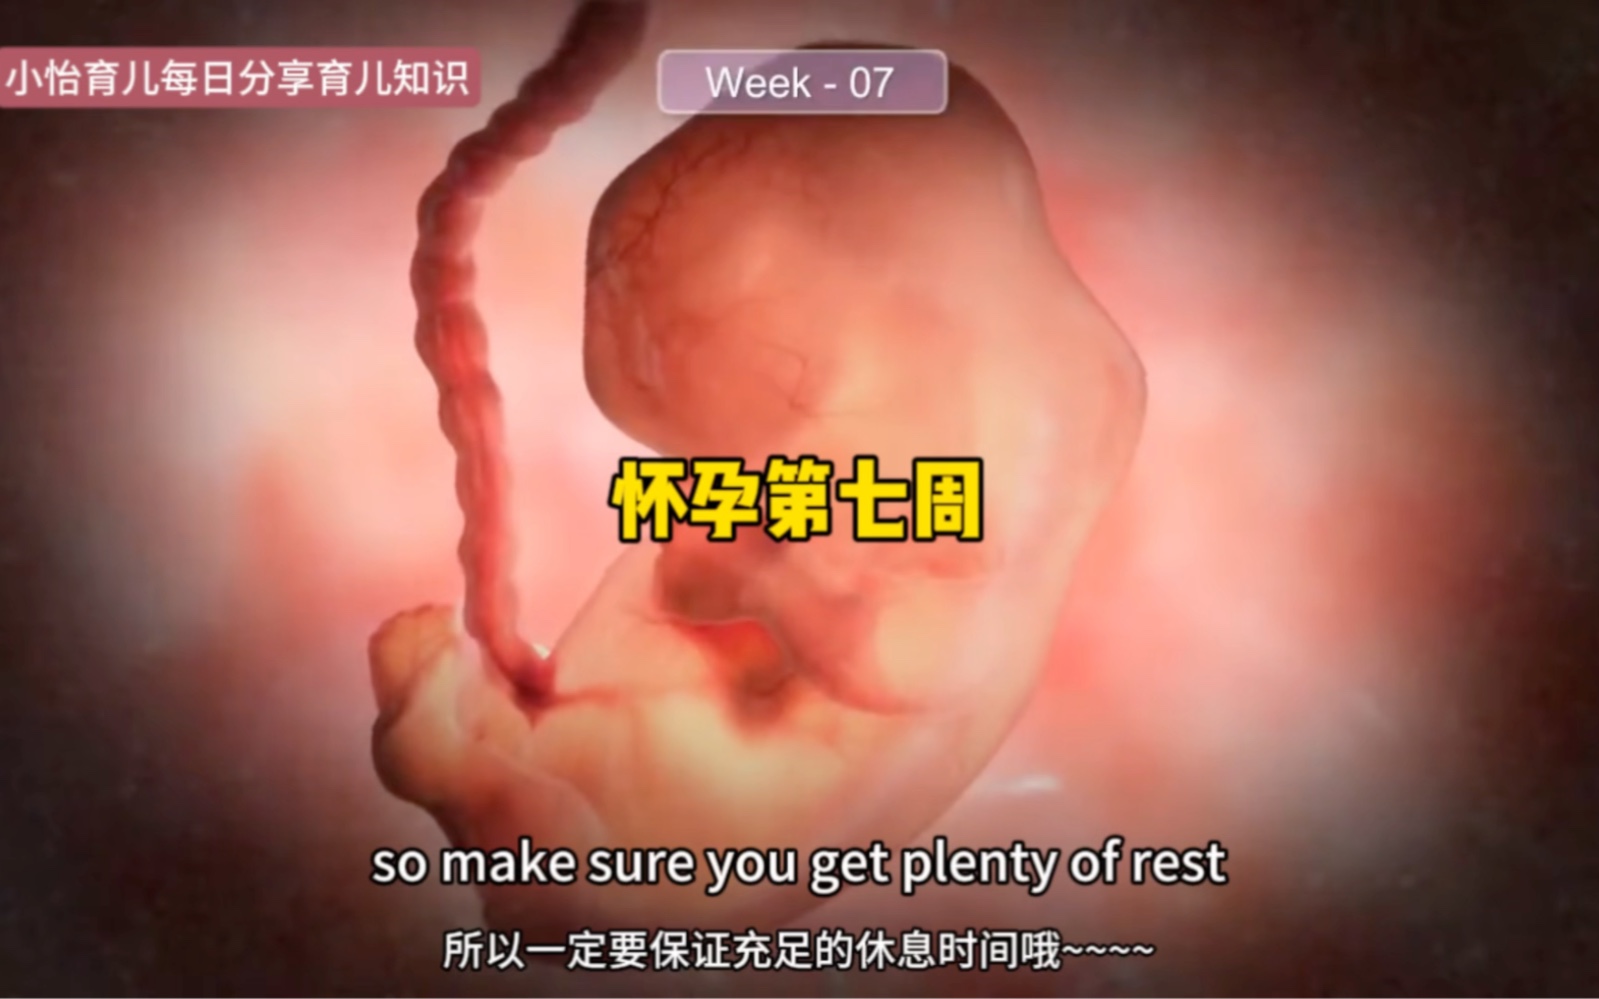 7周的胎儿有多大图片图片